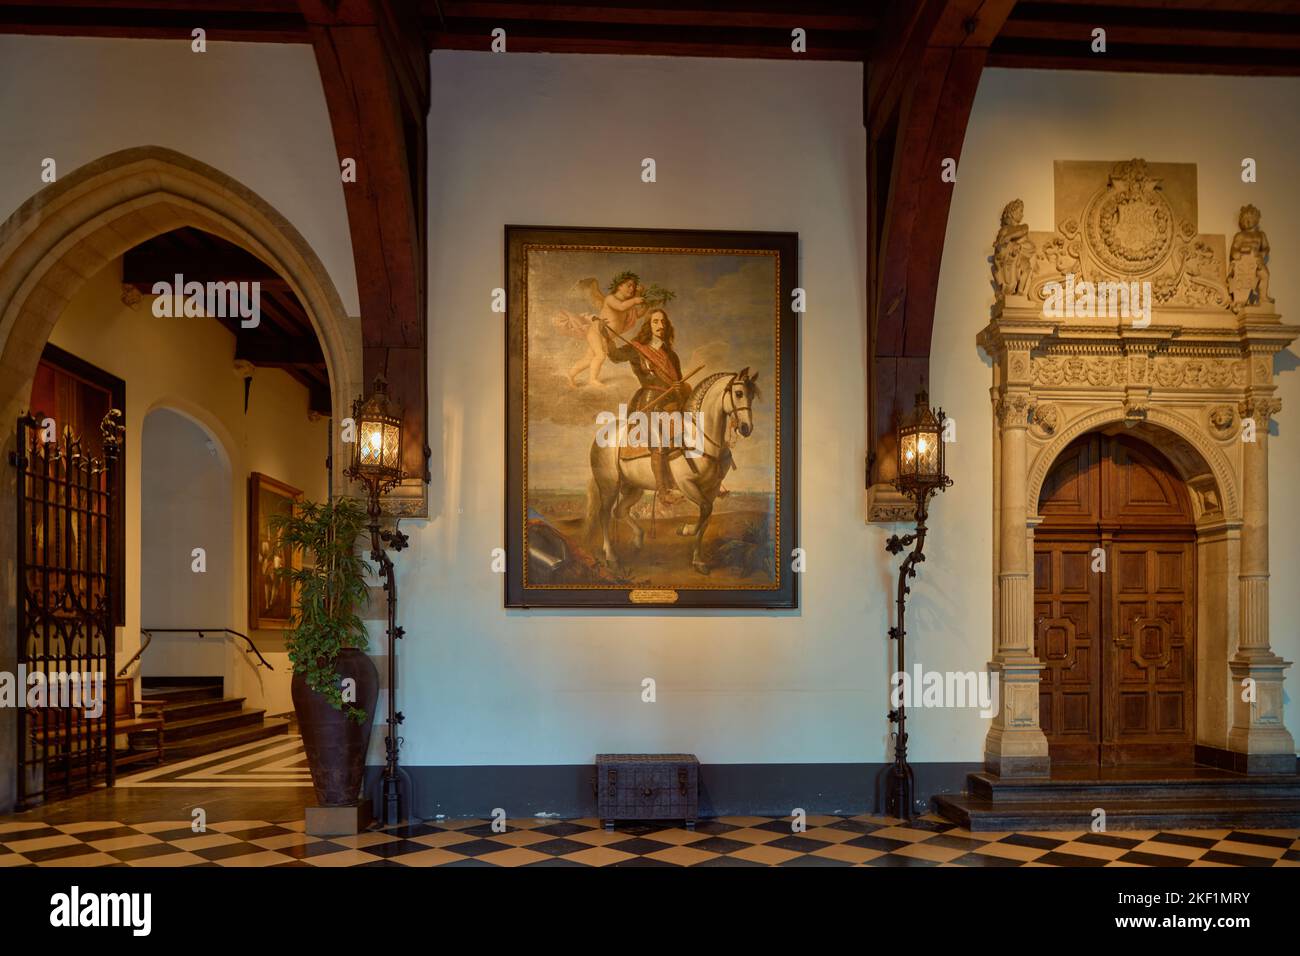 L'intérieur de l'hôtel de ville de Bruges avec une peinture de l'archiduc Léopold Wilhelm d'Autriche. Belgique. Banque D'Images